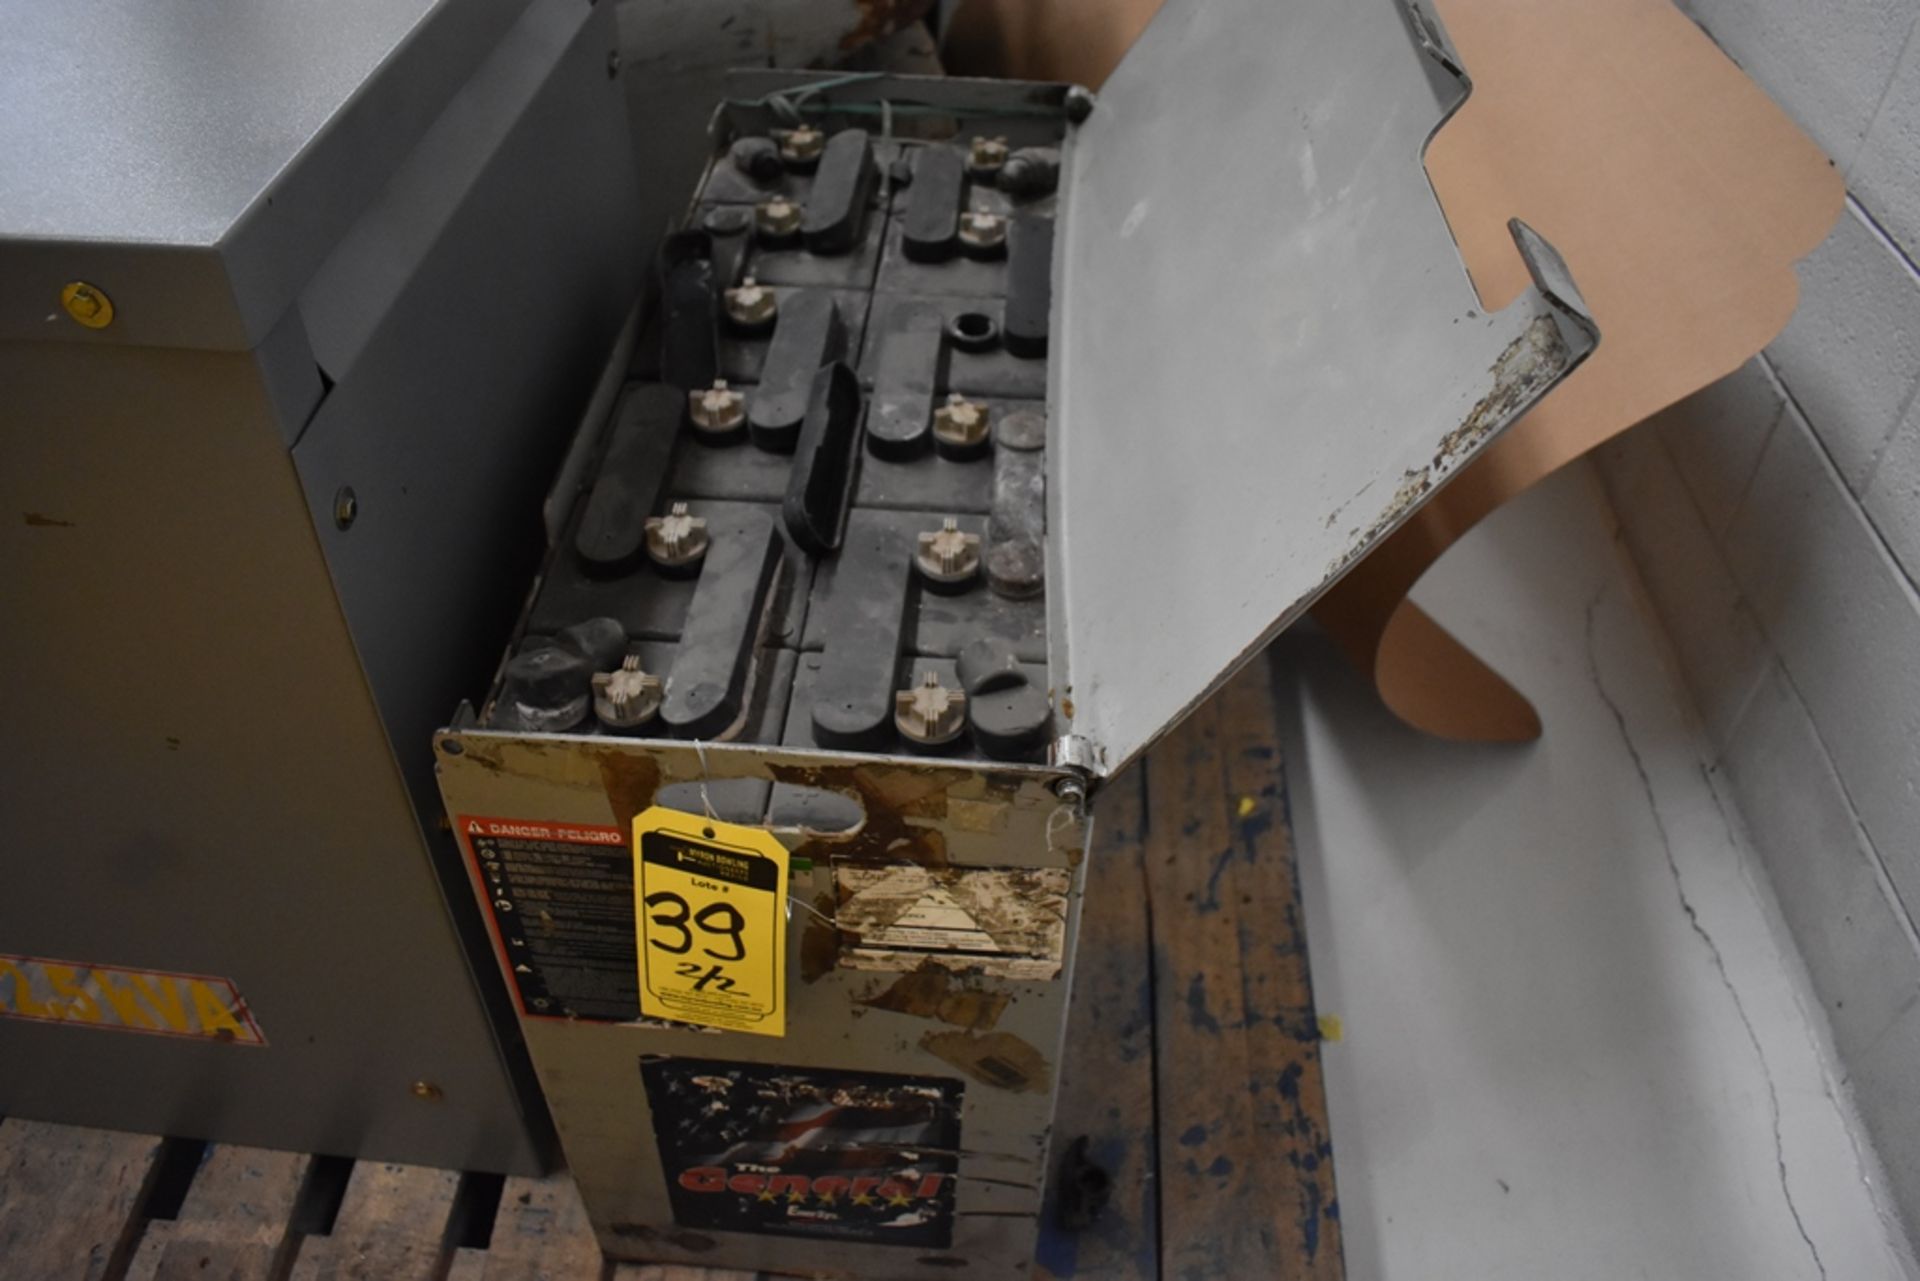 Ametek Prestolite Power Forklift Battery Charger, Model Mate-80 and Battery Brand Deka for 24 volts - Image 16 of 20